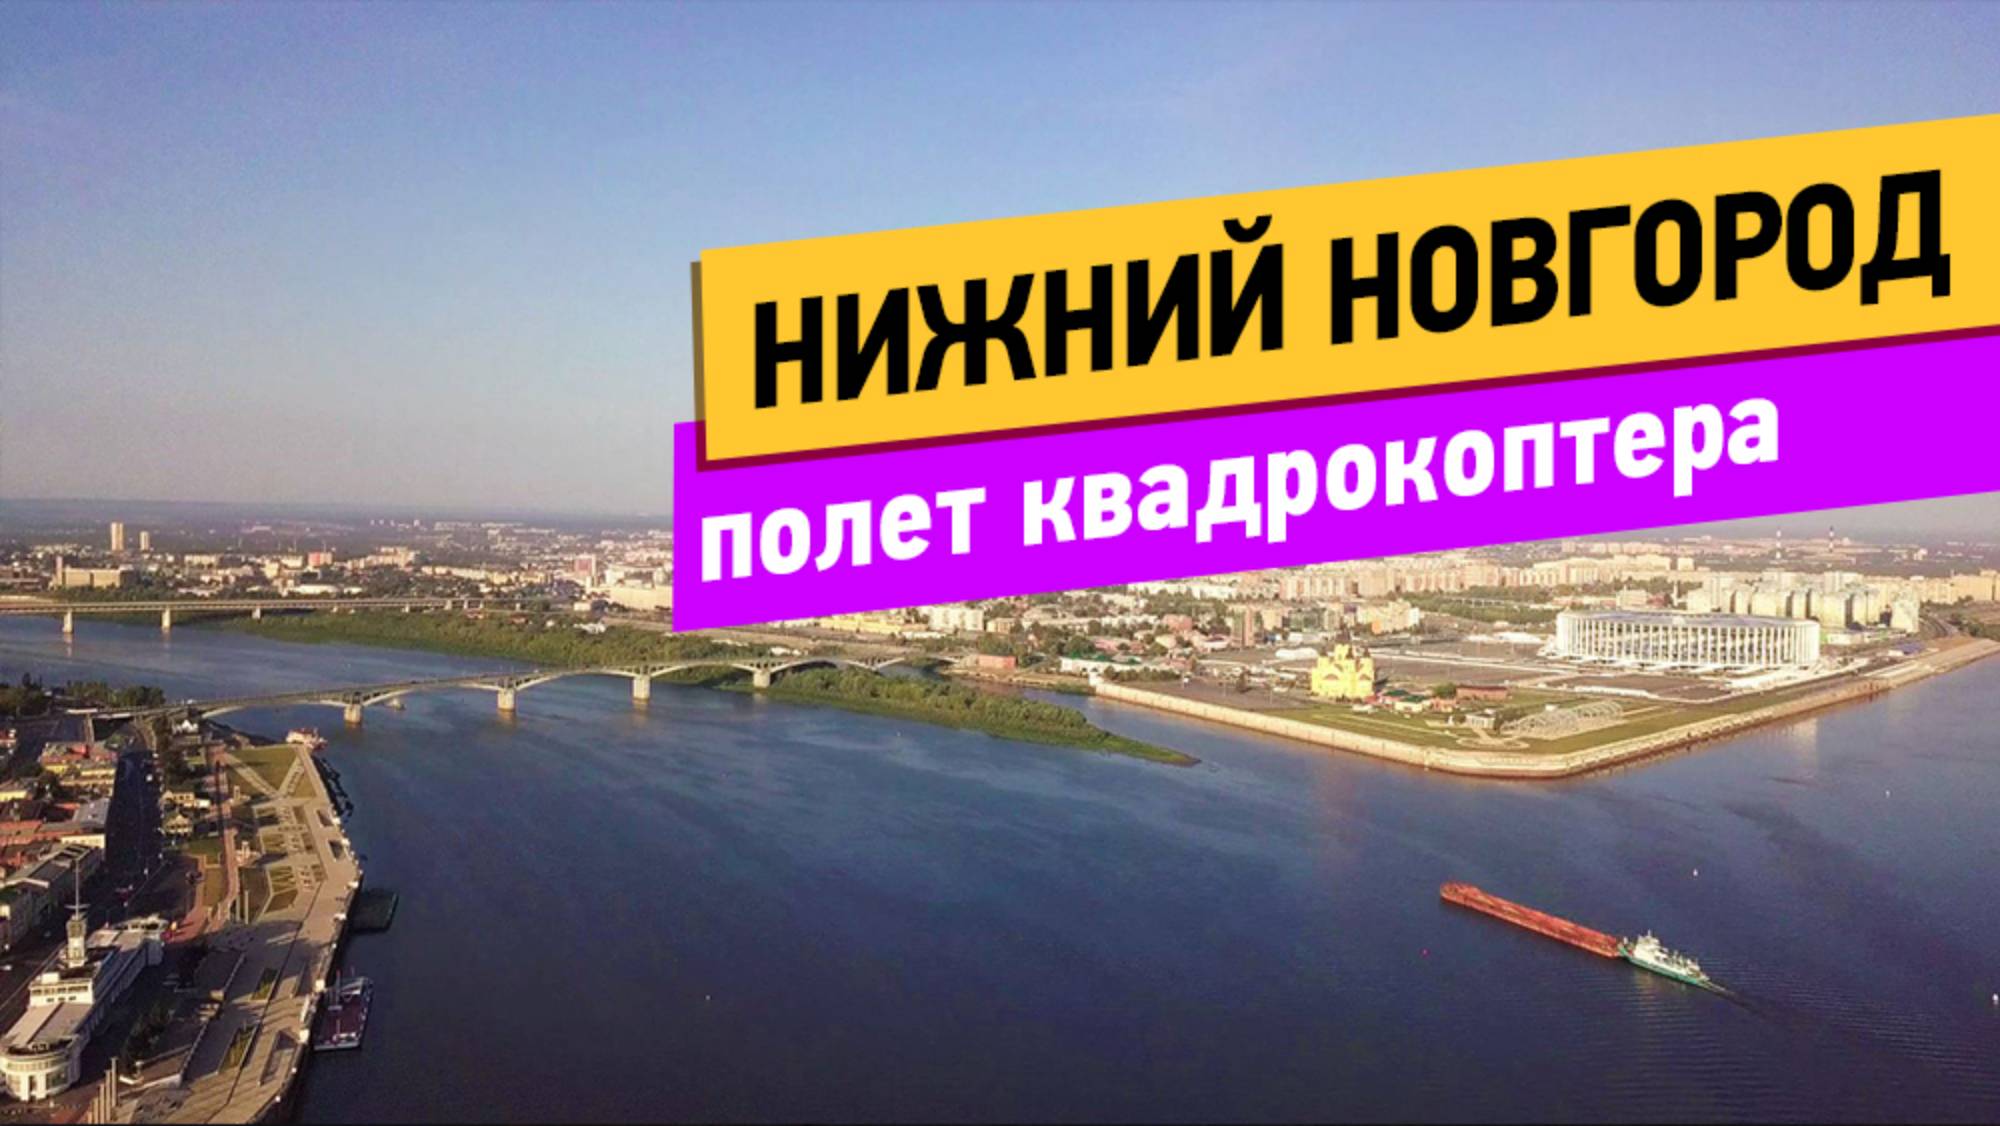 Нижний Новгород. Полёт квадрокоптера